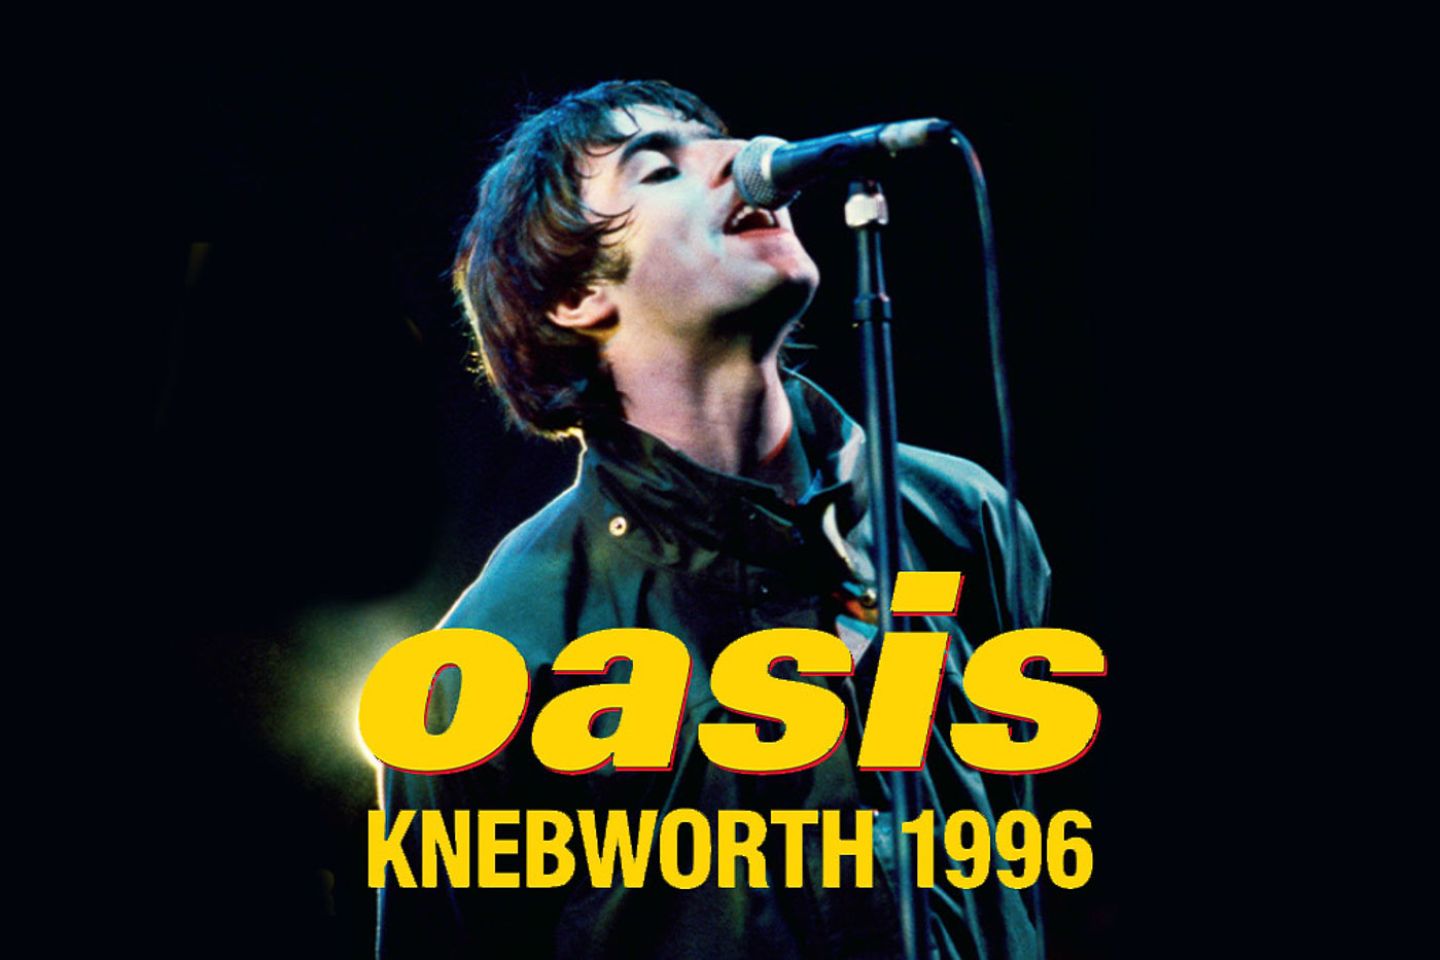 Oasis, Knebworth 1996